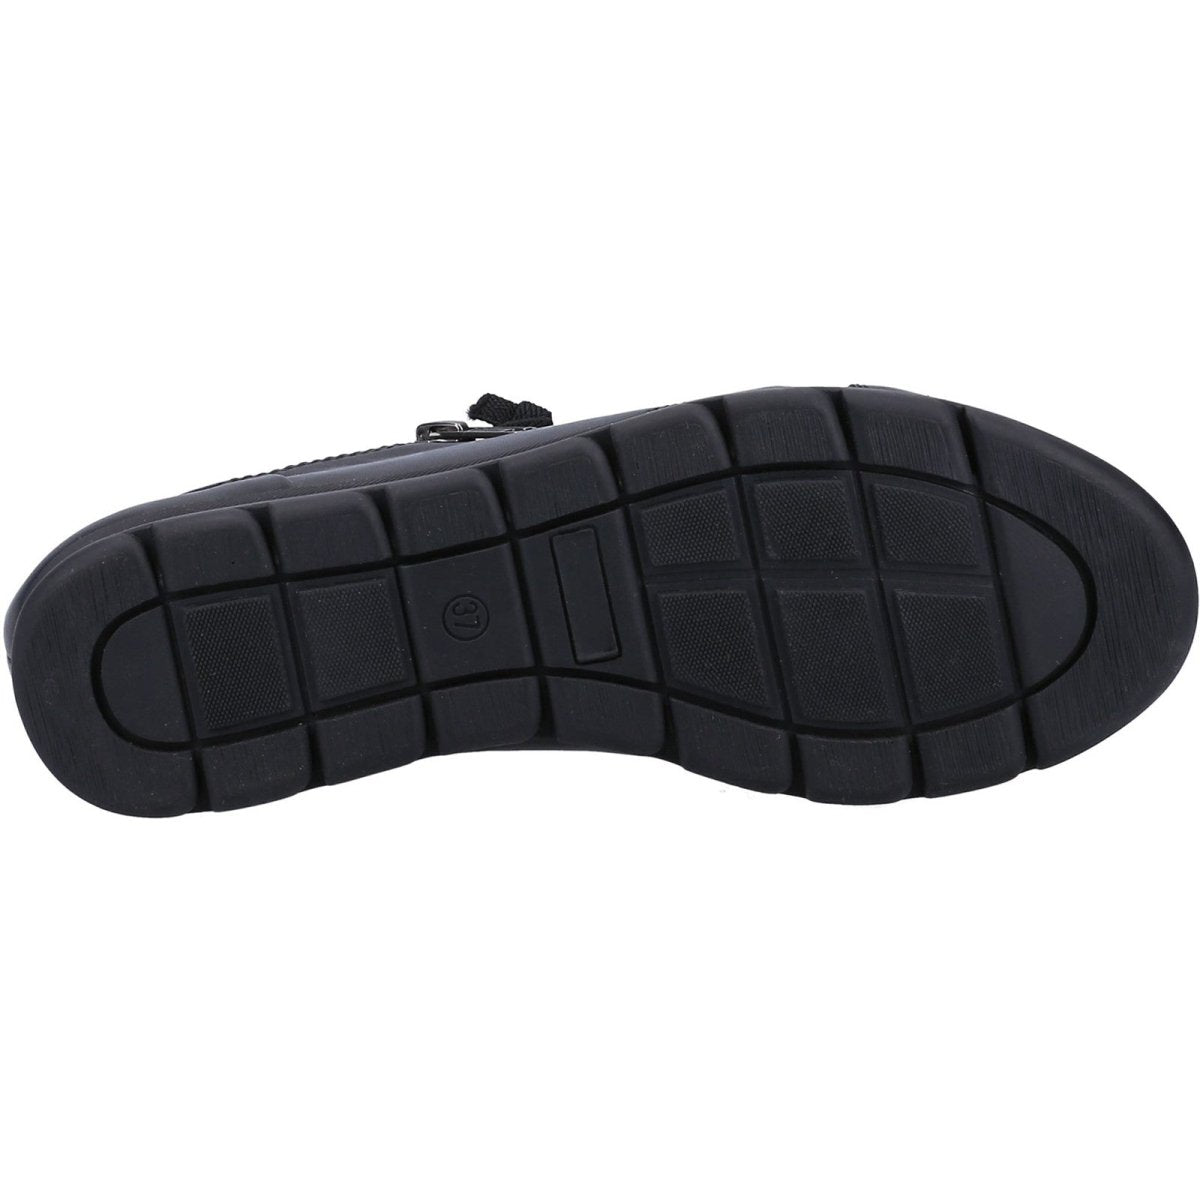 Fleet & Foster Polperro Leather Comfort Side-Zip Ladies Shoes - Shoe Store Direct